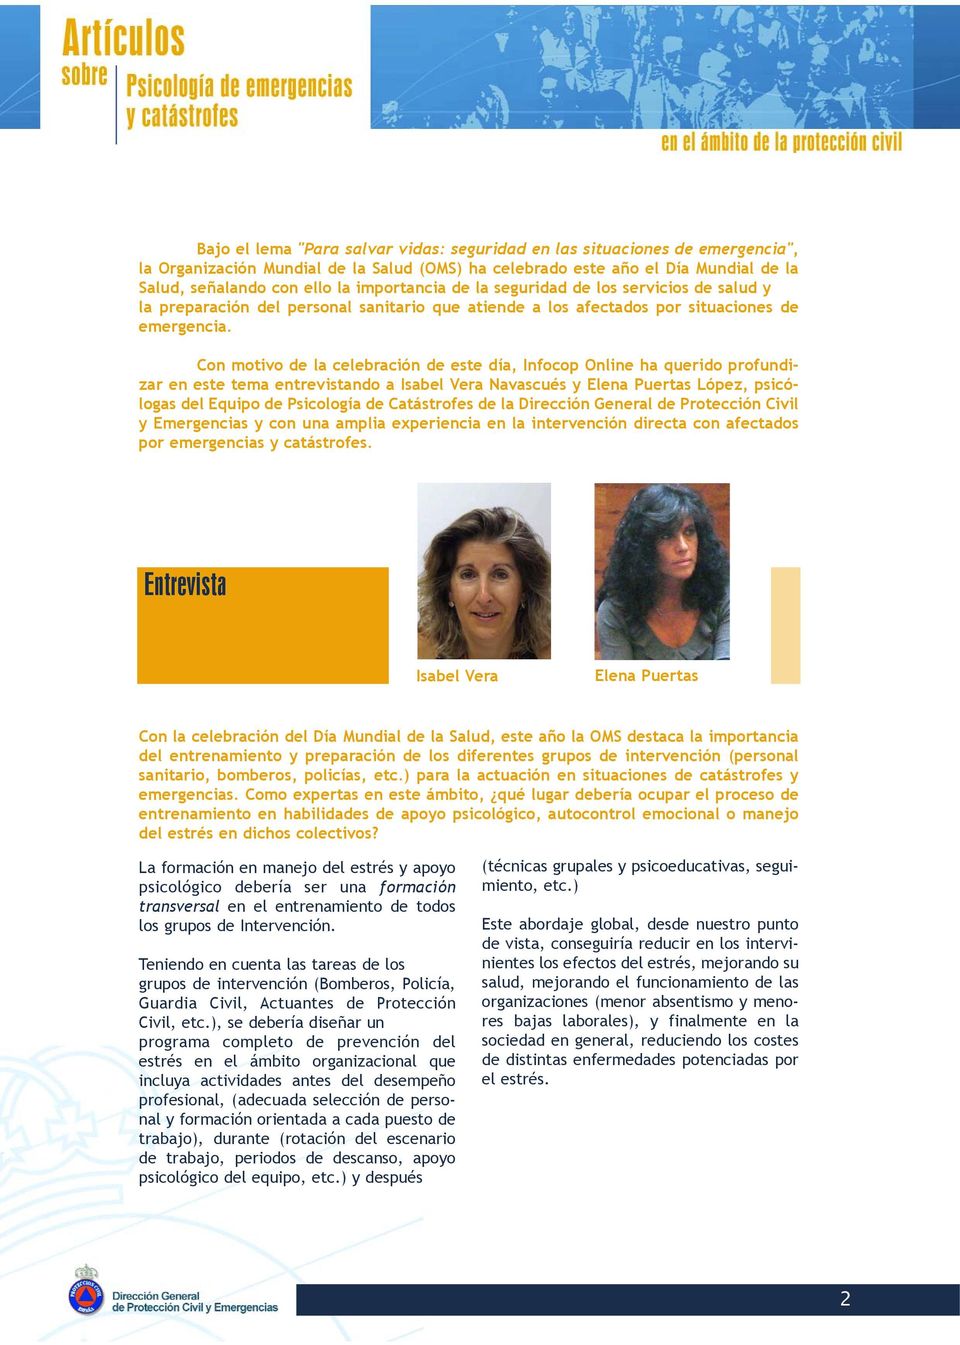 Con motivo de la celebración de este día, Infocop Online ha querido profundizar en este tema entrevistando a Isabel Vera Navascués y Elena Puertas López, psicólogas del Equipo de Psicología de